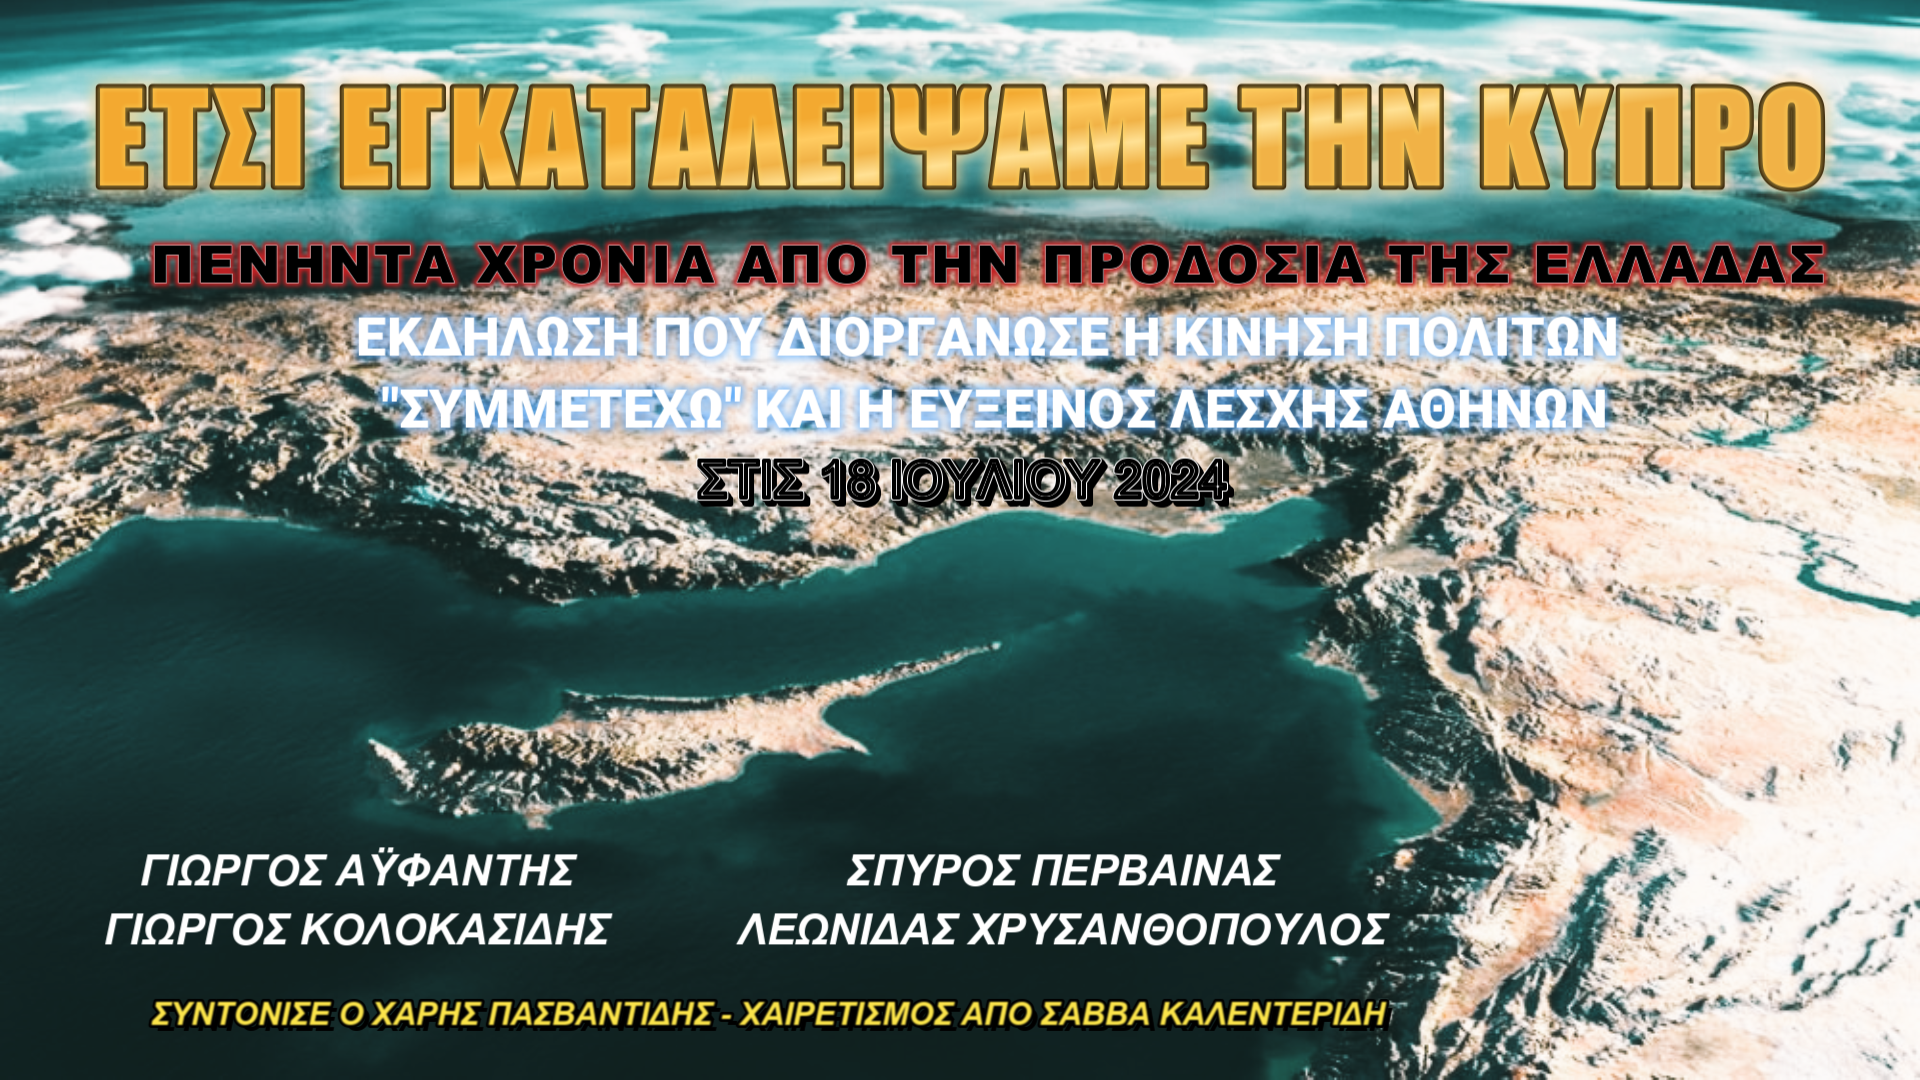 Πενήντα χρόνια από την προδοσία της Ελλάδας στην Κύπρο! Εκδήλωση του “Συμμετέχω” και της “Ευξείνου Λέσχης Αθηνών” (ΒΙΝΤΕΟ)